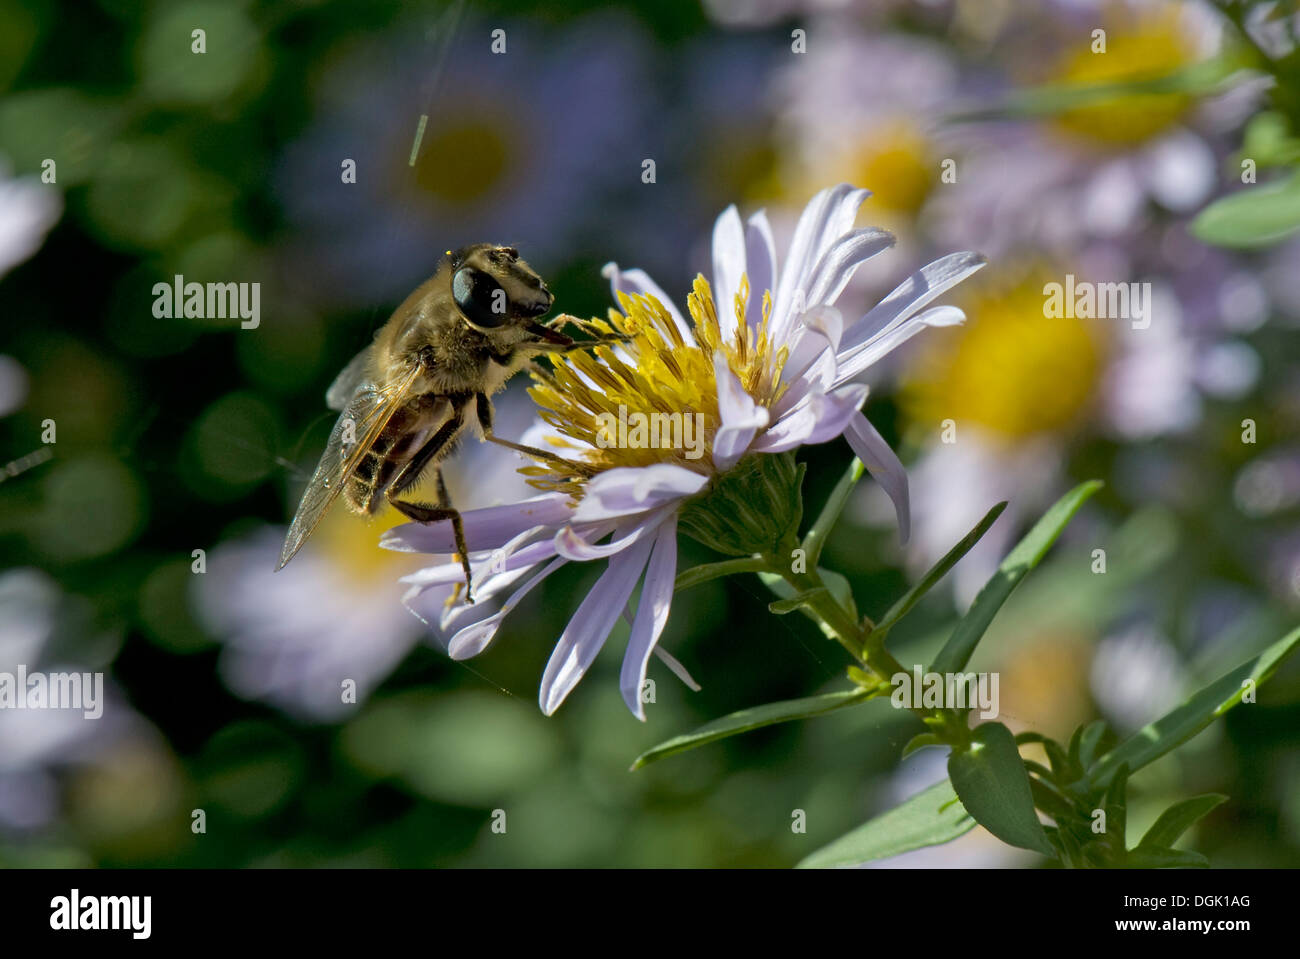 Eristalis tenax, fly Drone, en tenant un nectar de michaelmas daisy, Aster spp., fleur en automne Banque D'Images